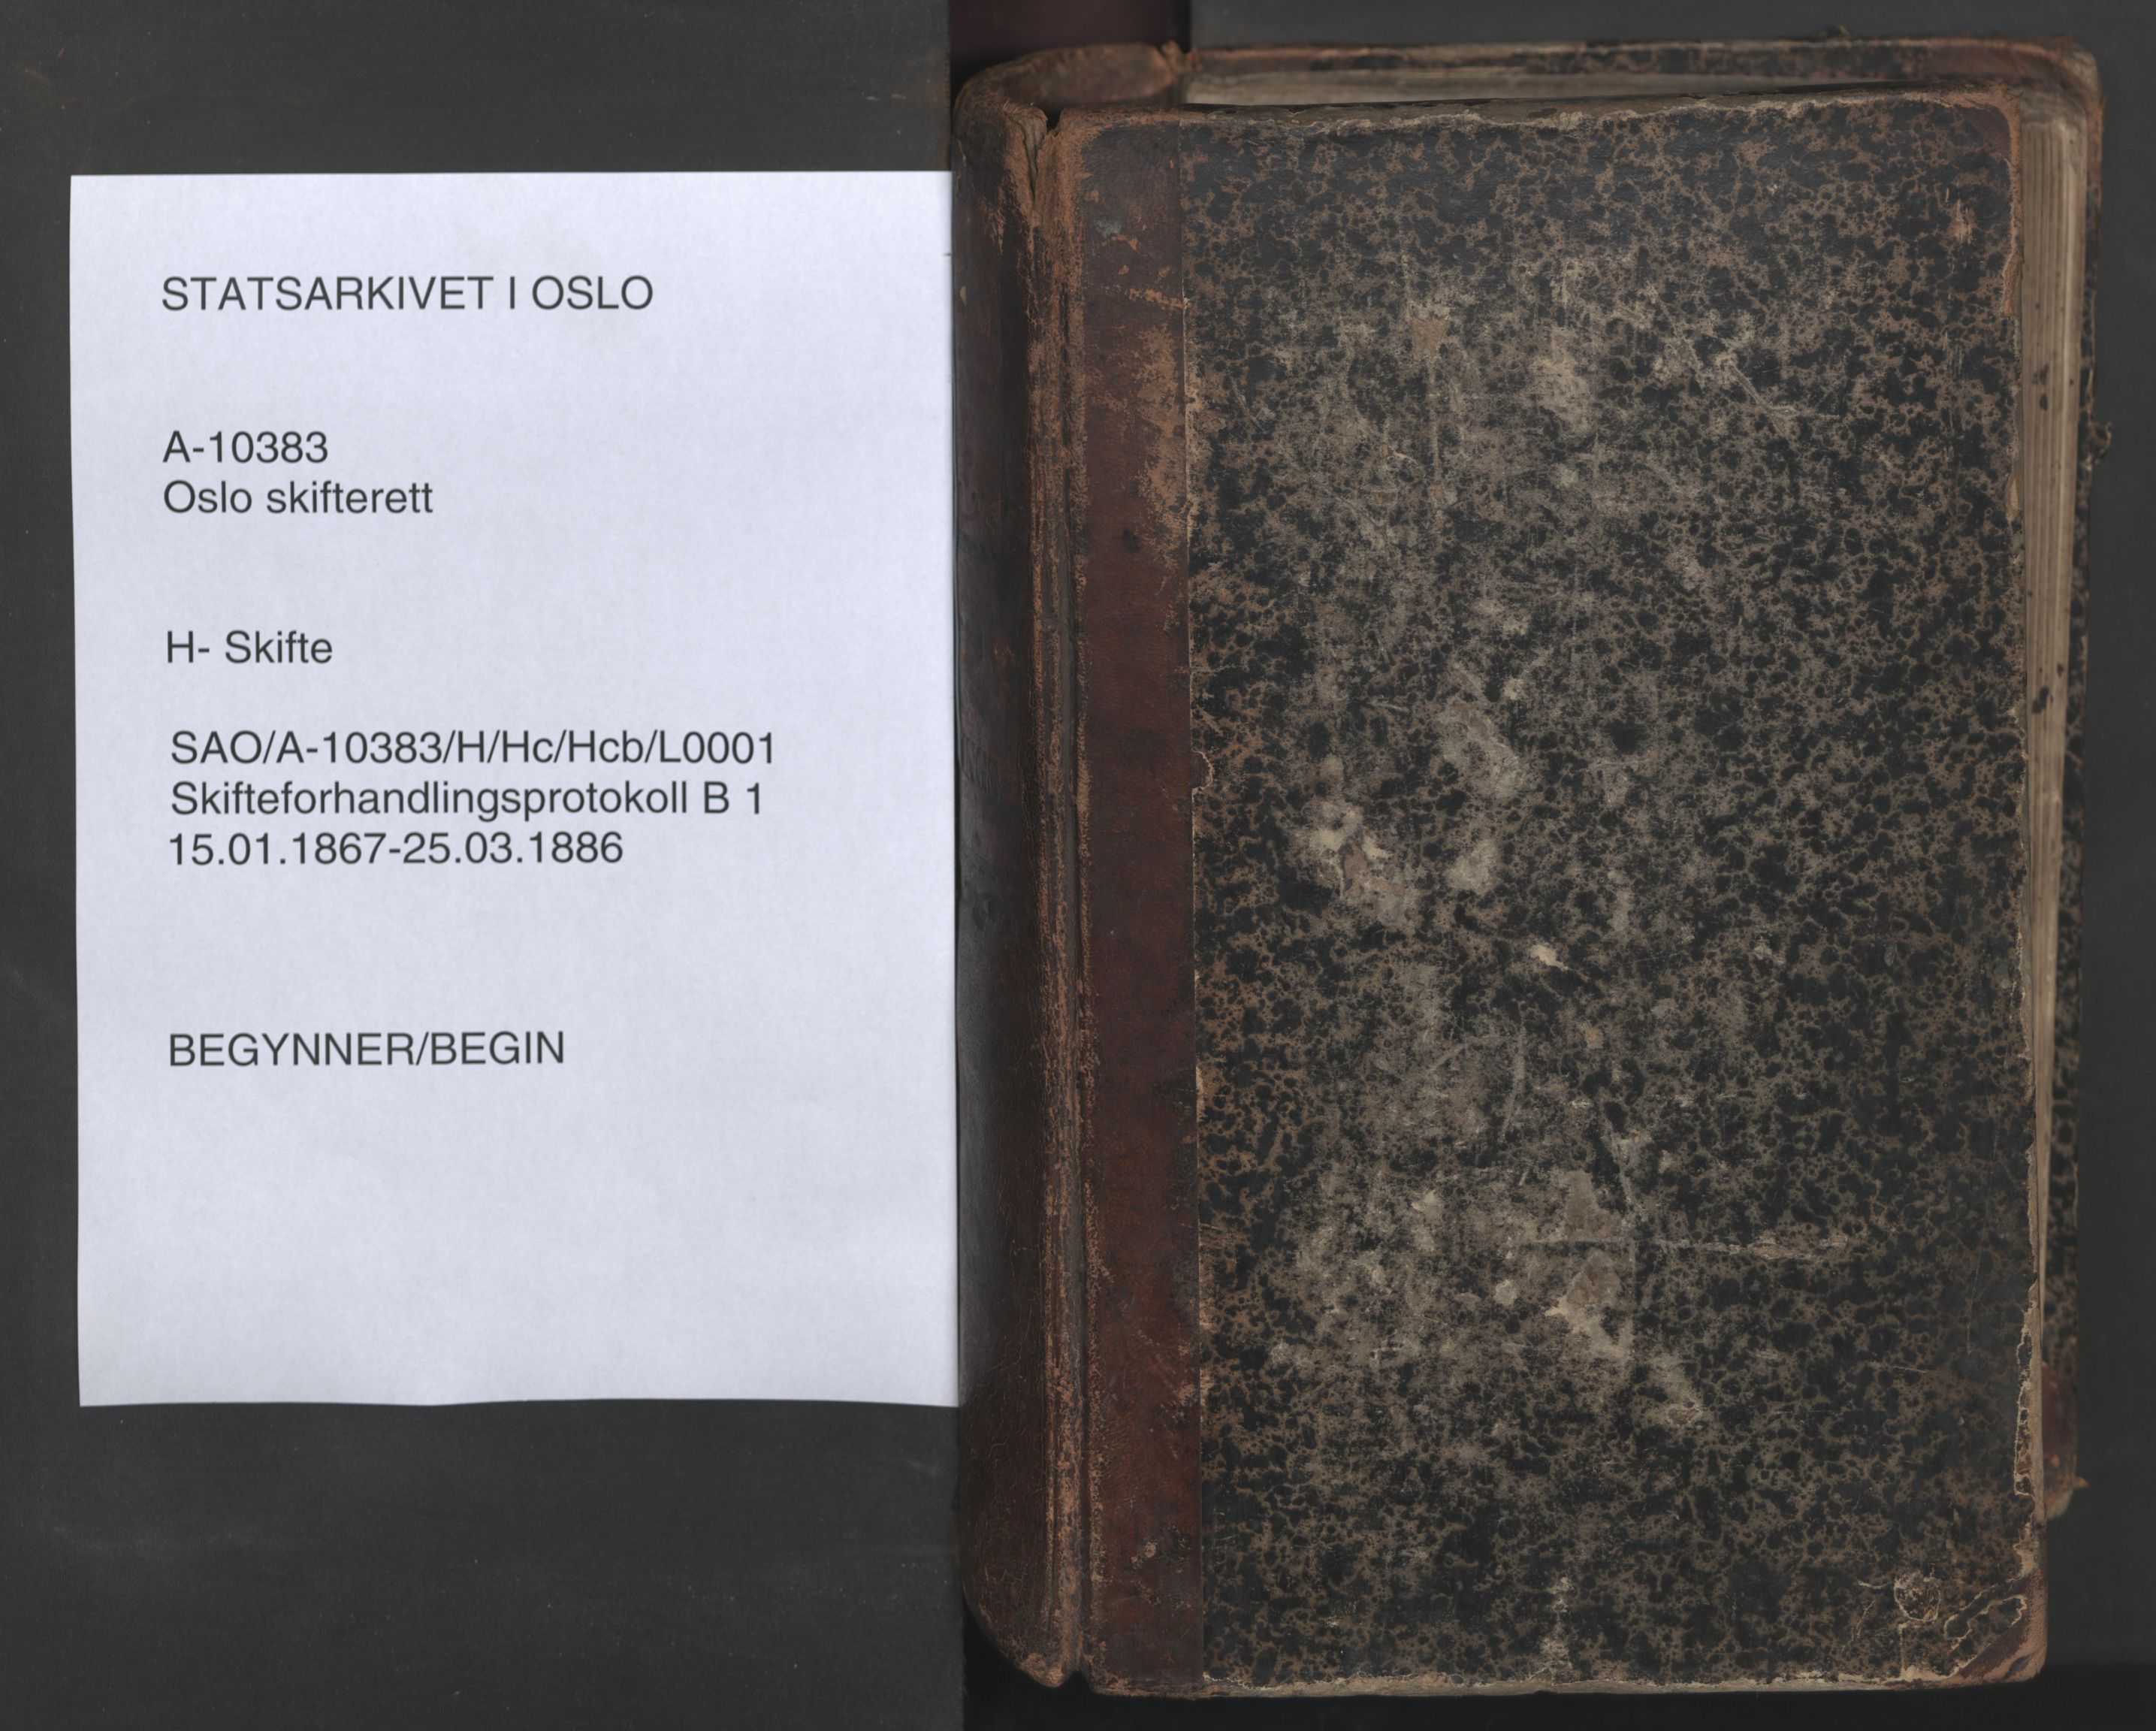 Oslo skifterett, SAO/A-10383/H/Hc/Hcb/L0001: Skifteforhandlingsprotokoll, 1867-1886